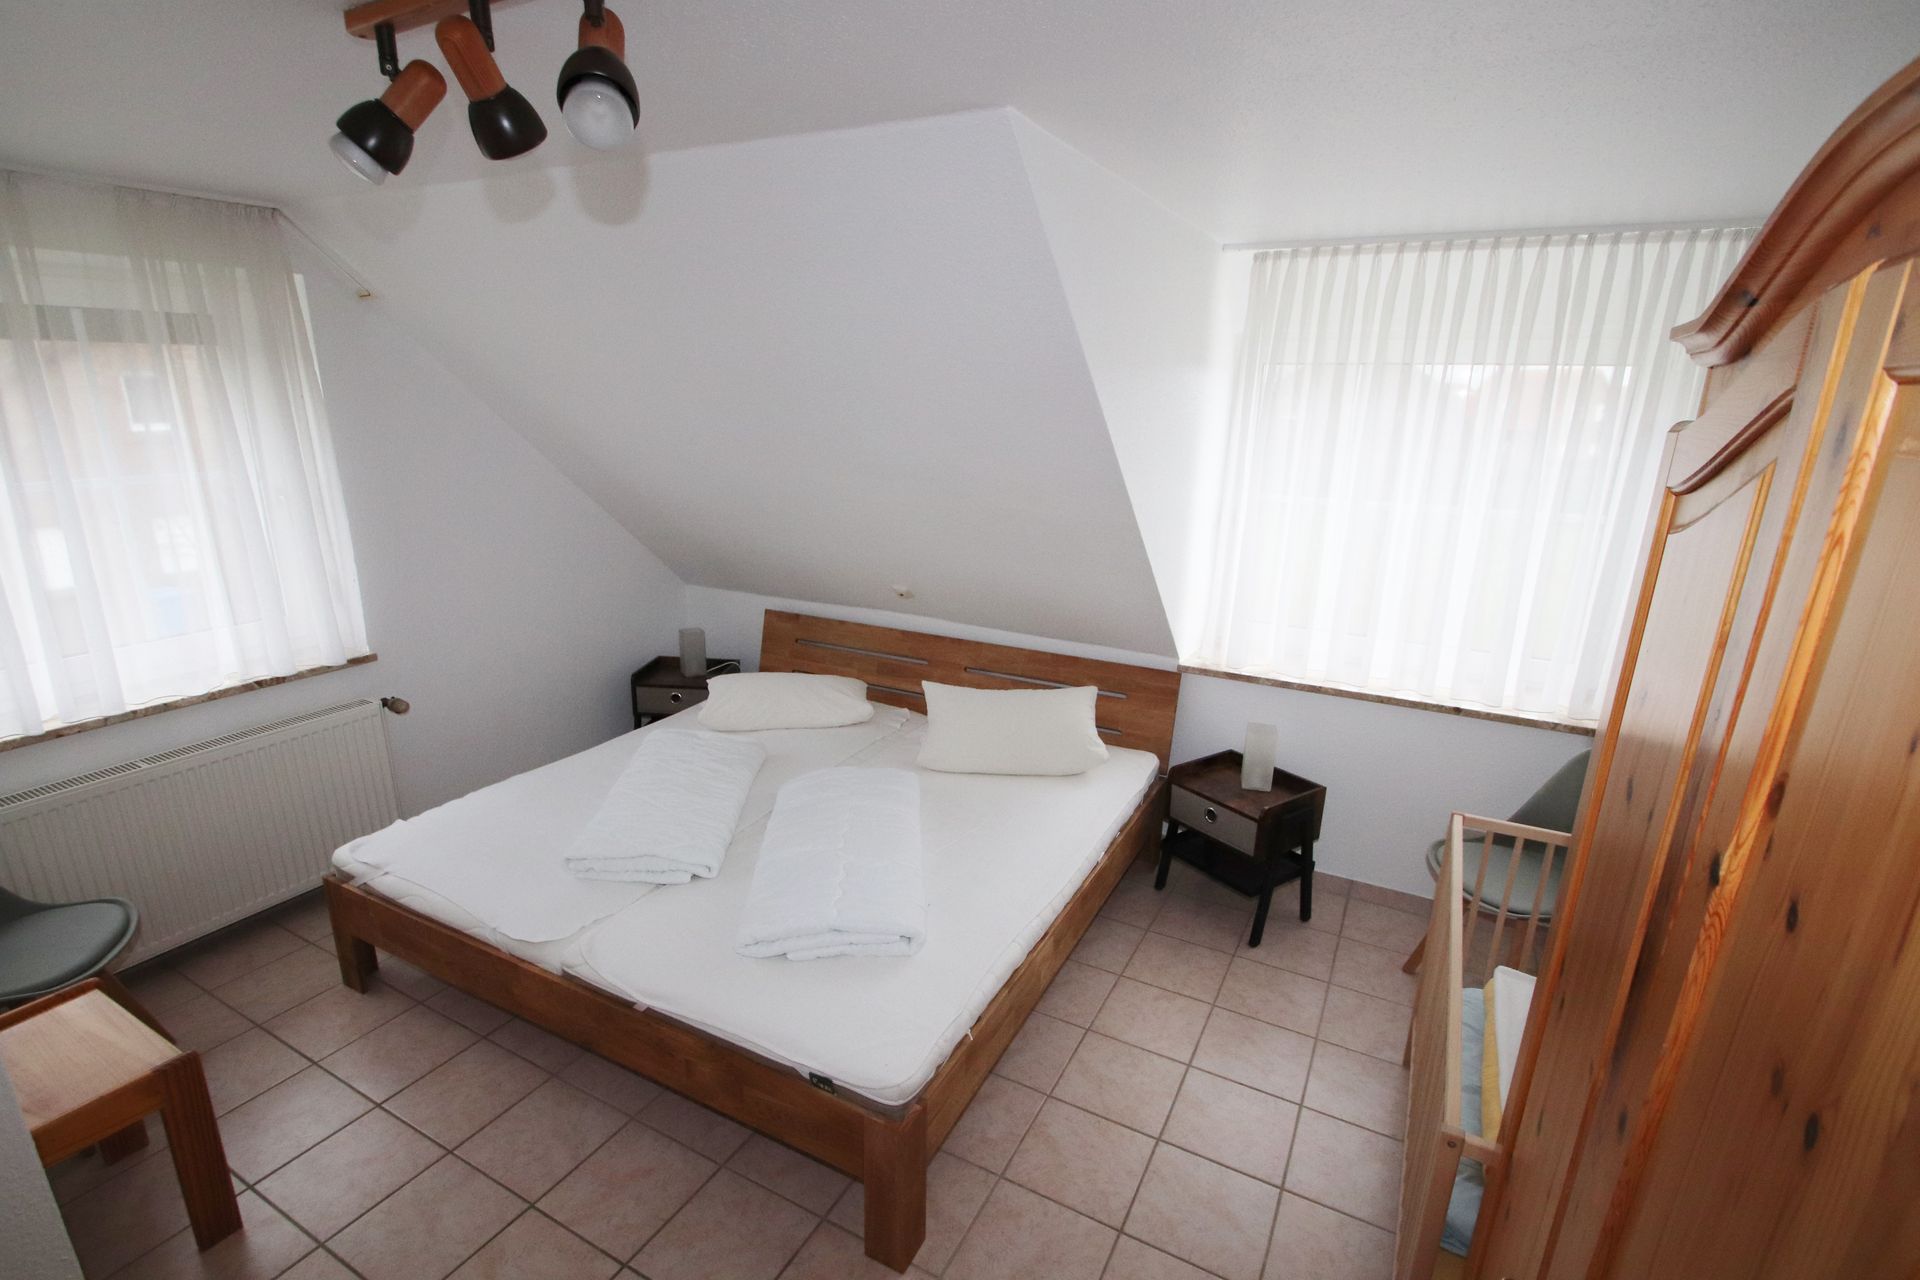 Schlafraum mit Doppelbett im Obergeschoss Ferienhaus Tötel 1a Nordsee Friedrichskoog